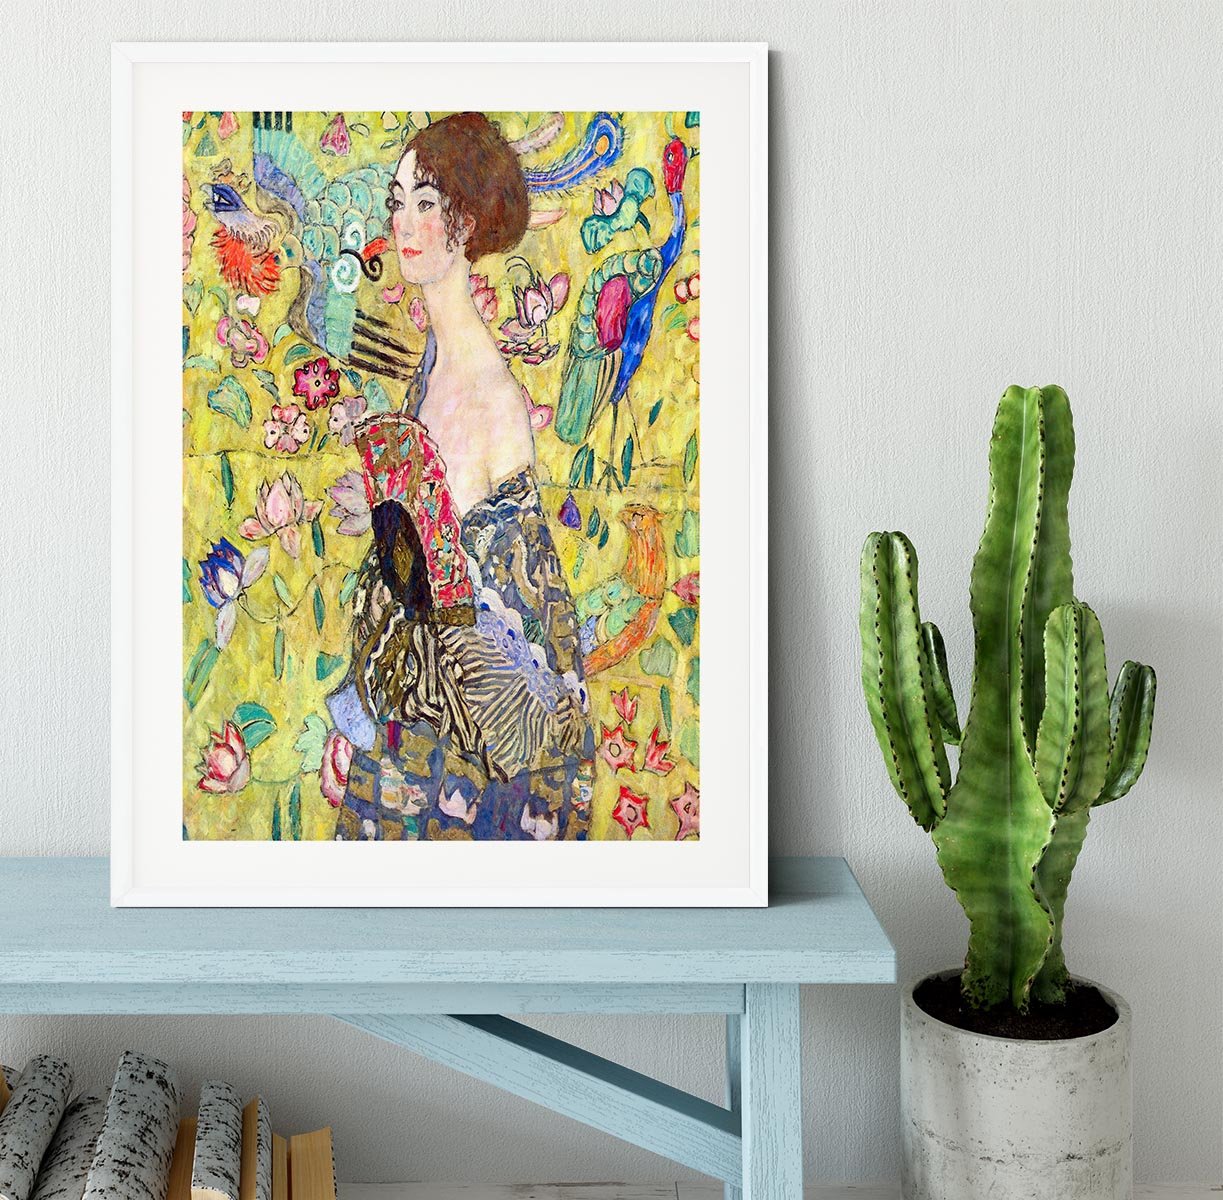 Lady with fan by Klimt Framed Print - Canvas Art Rocks - 5